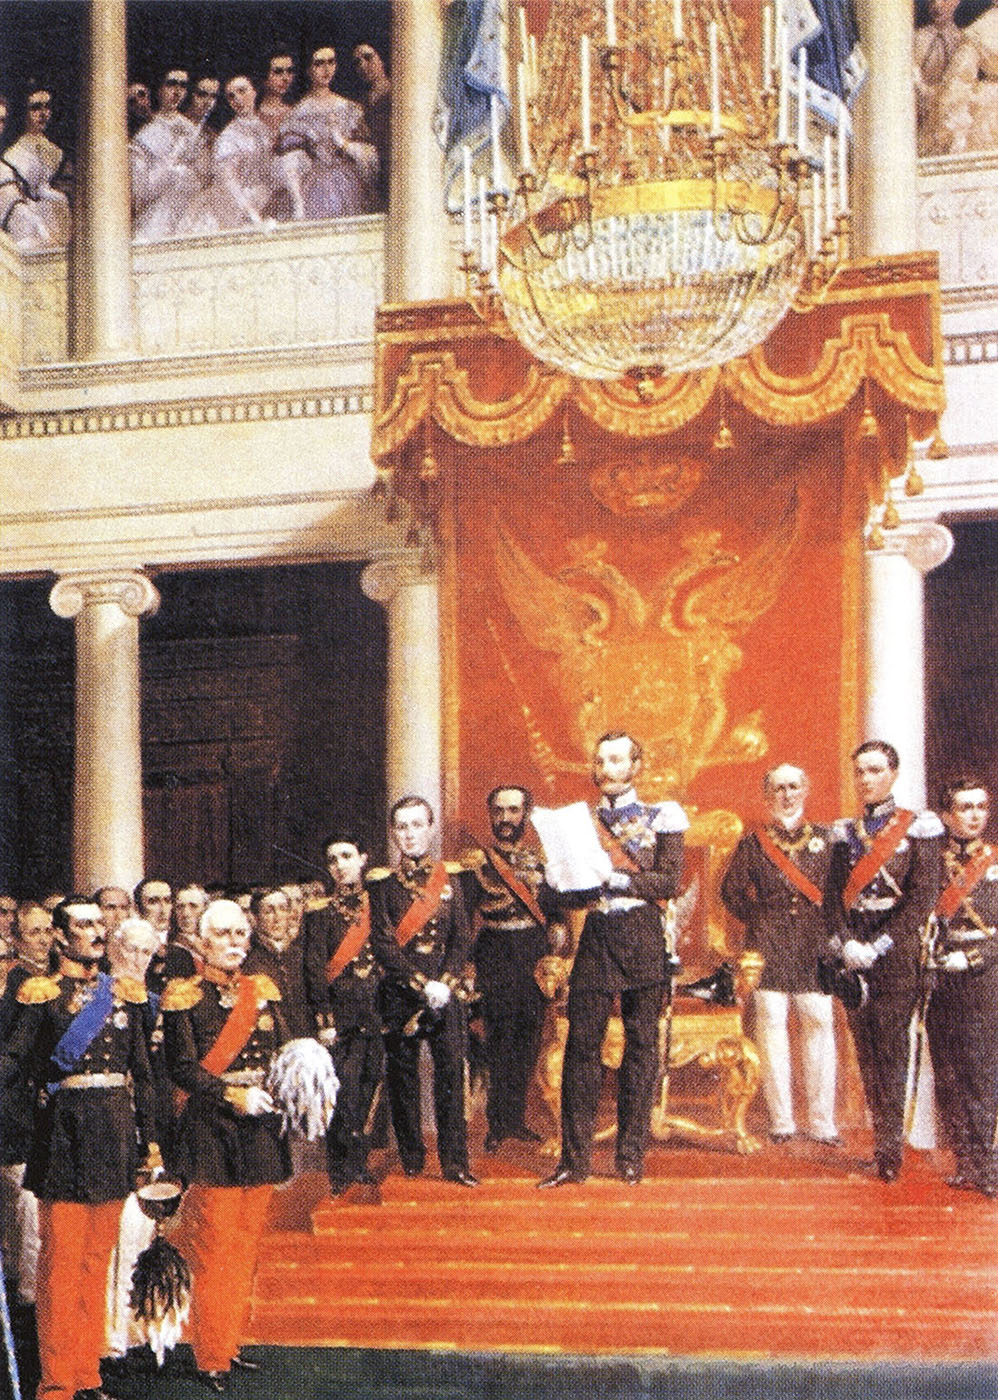 Р. Экман. "Александр II официально провозглашает открытие сессии Сейма Финляндии в 1863 году".